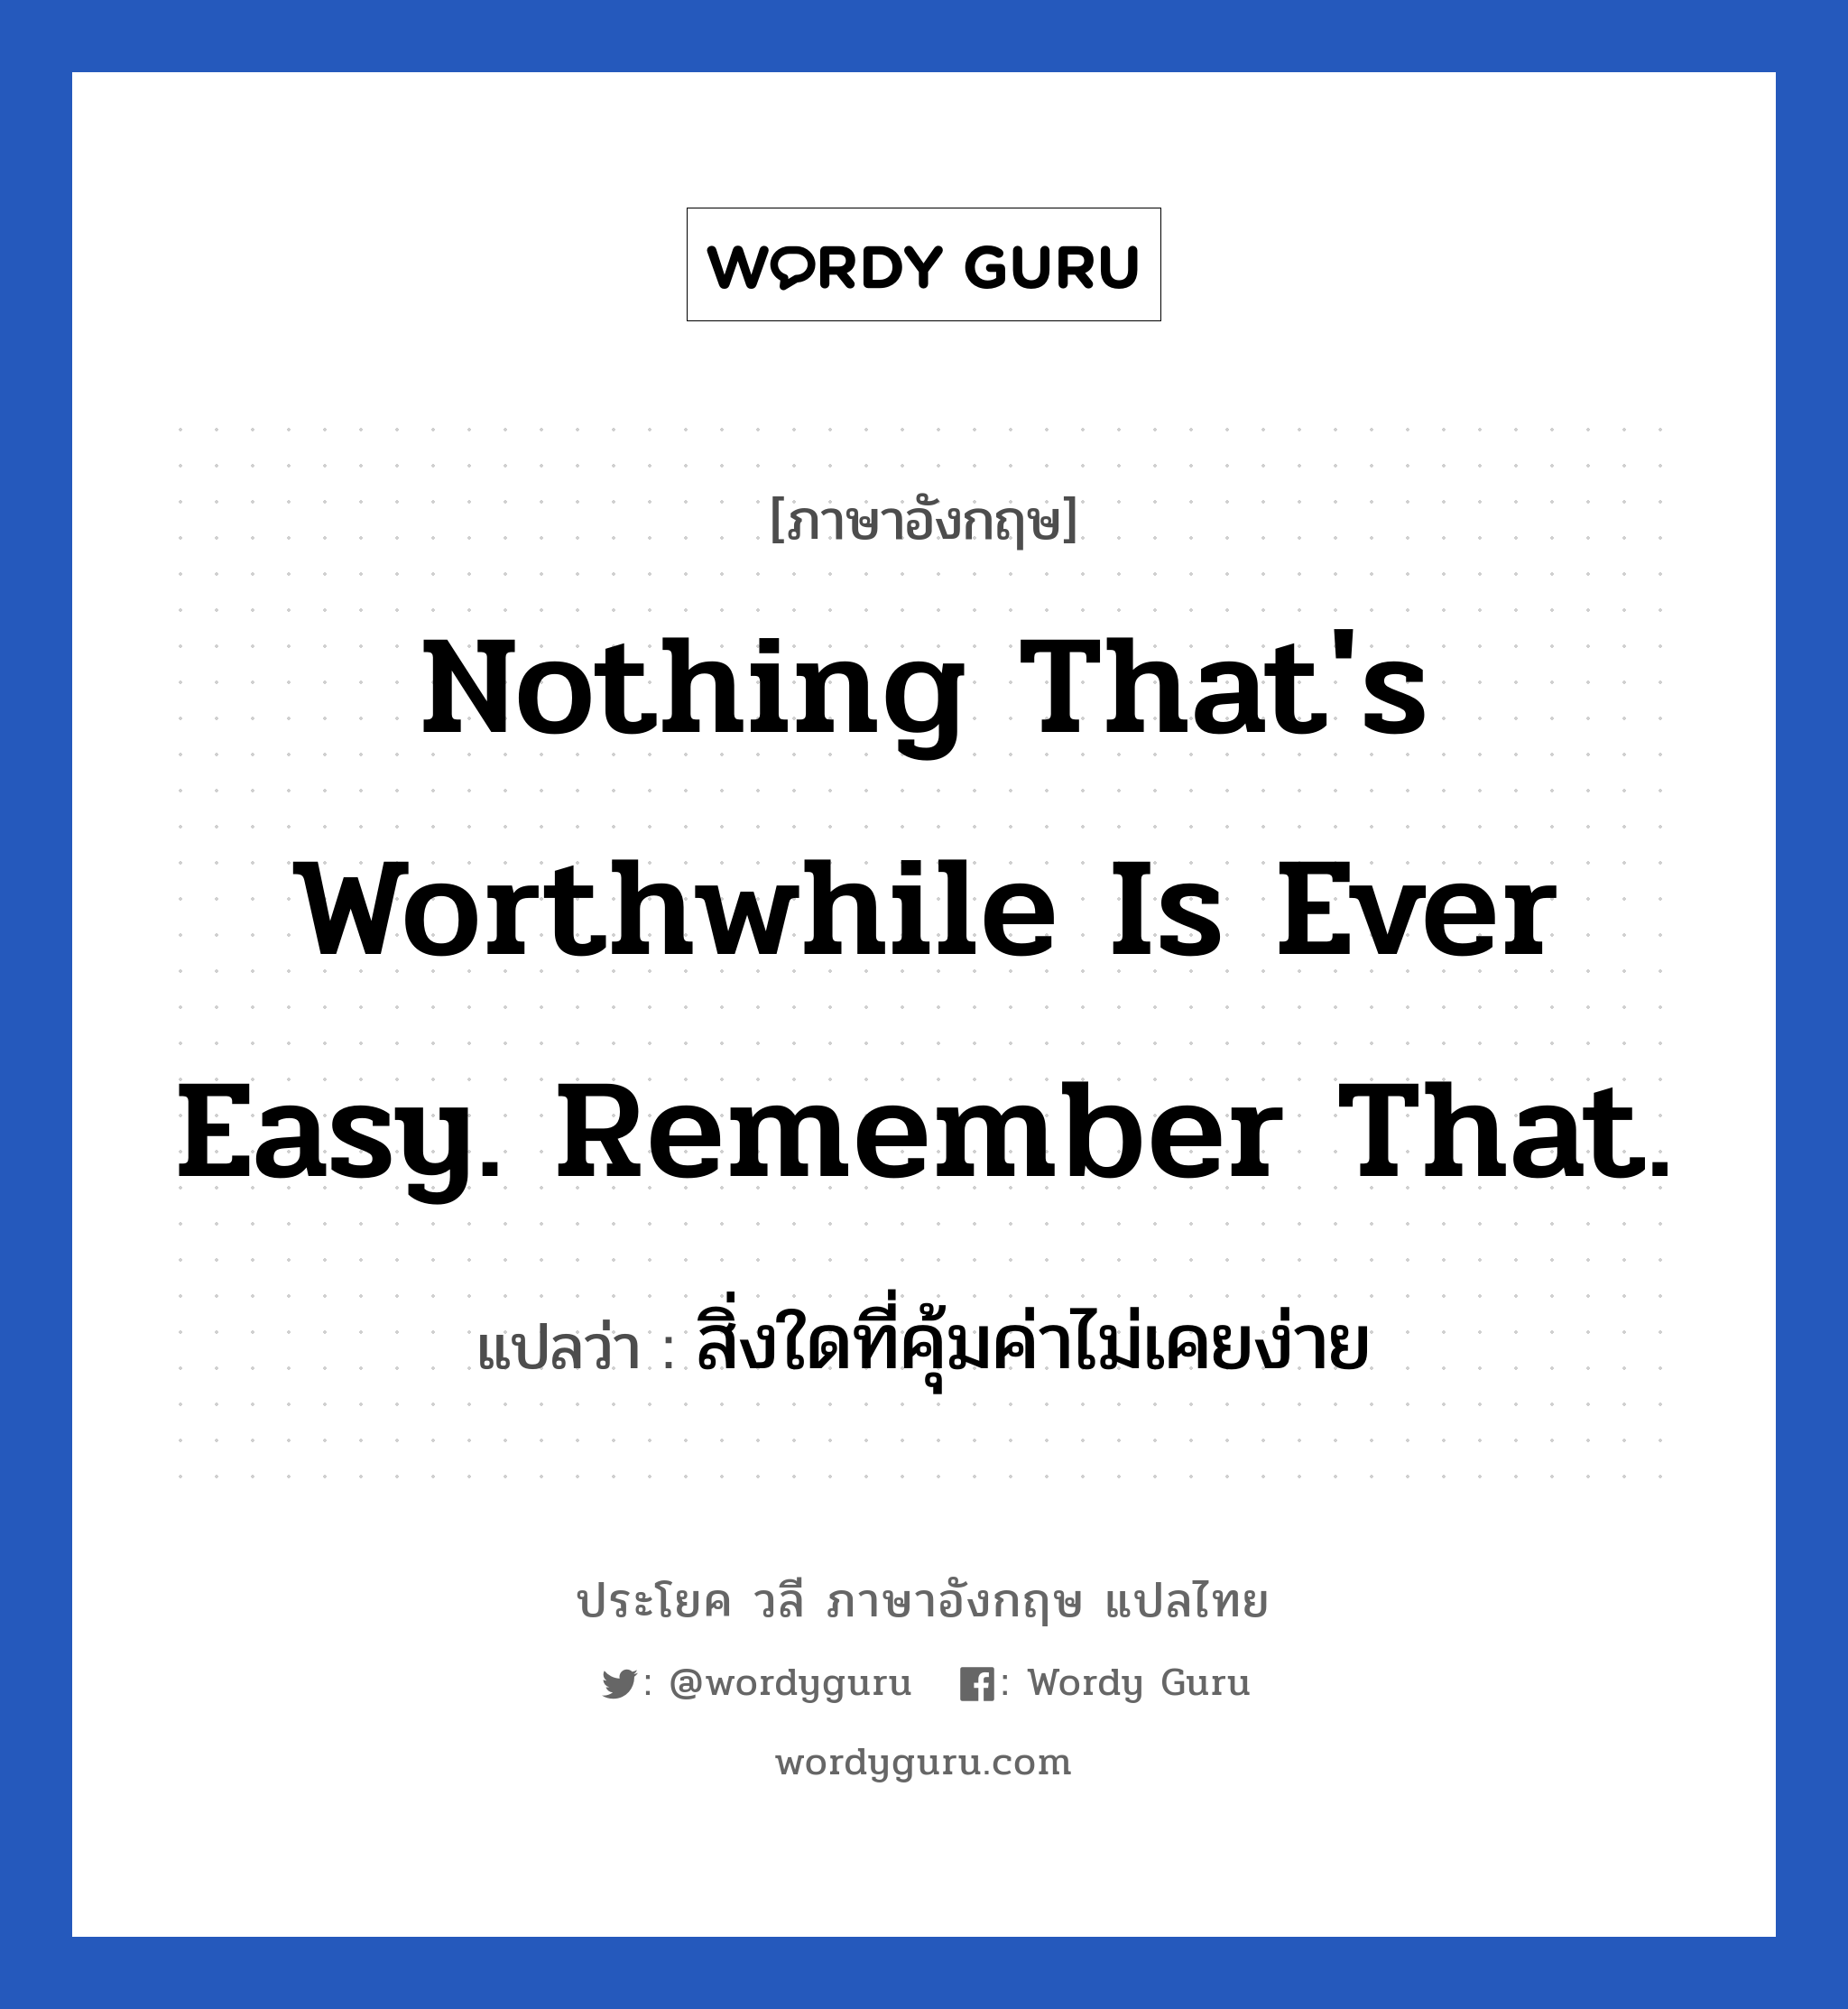 สิ่งใดที่คุ้มค่าไม่เคยง่าย ภาษาอังกฤษ?, วลีภาษาอังกฤษ สิ่งใดที่คุ้มค่าไม่เคยง่าย แปลว่า Nothing that's worthwhile is ever easy. Remember that. หมวด ในที่ทำงาน